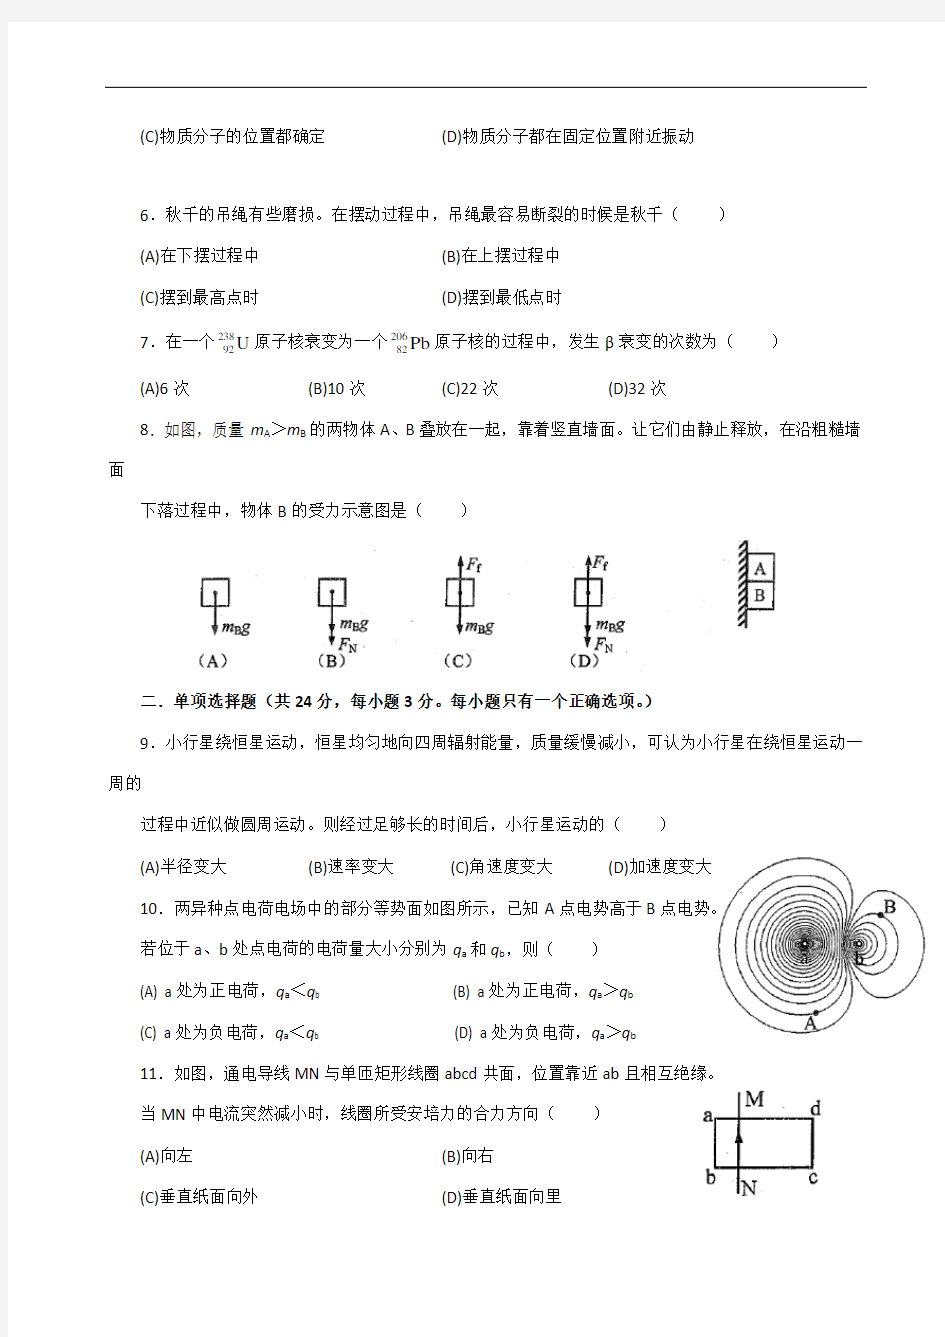 2013年上海高考物理试卷电了稿(校对版)带标准答案